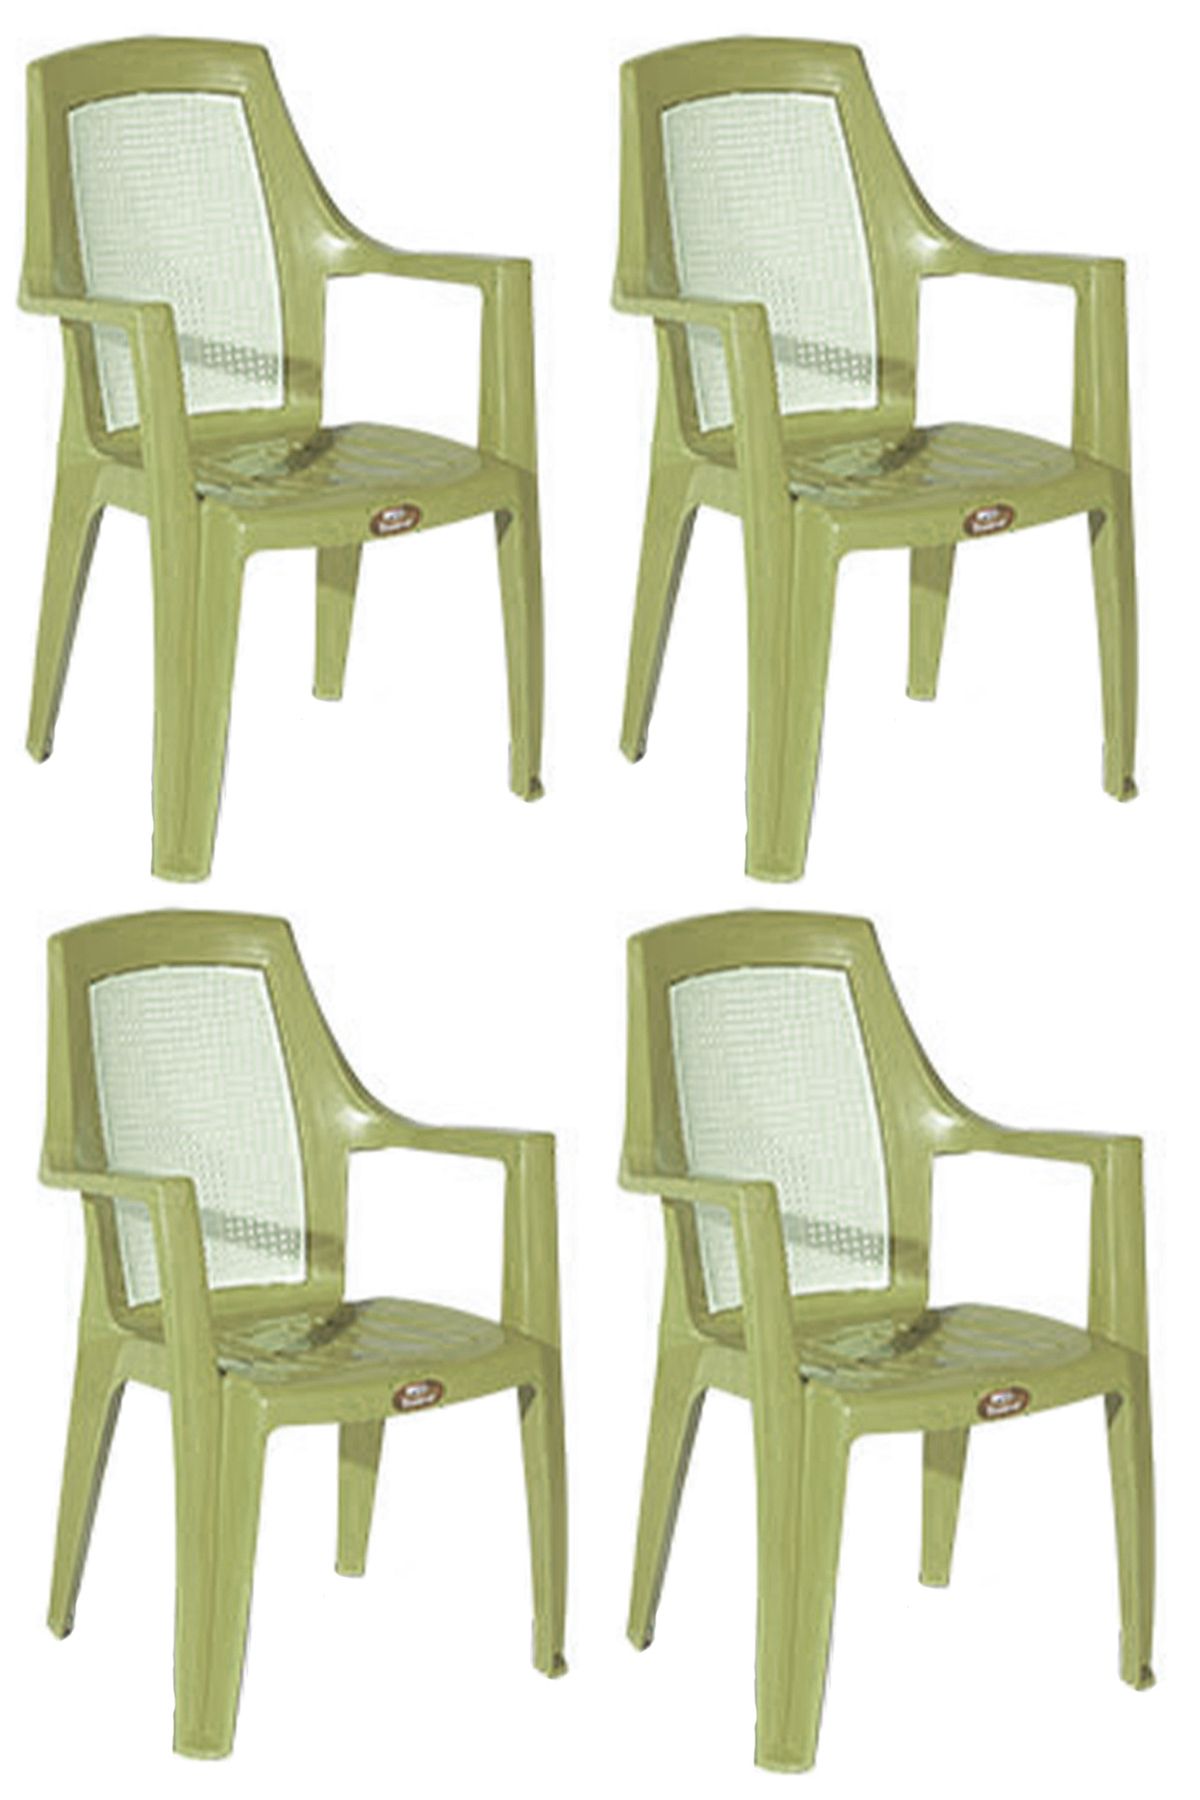 ALMİNA Plastik Bahçe Sandalyesi Bahçe Balkon Ve Teras Sandalyesi Çift Renk Diamond Sandalye Takımı 4 Adet